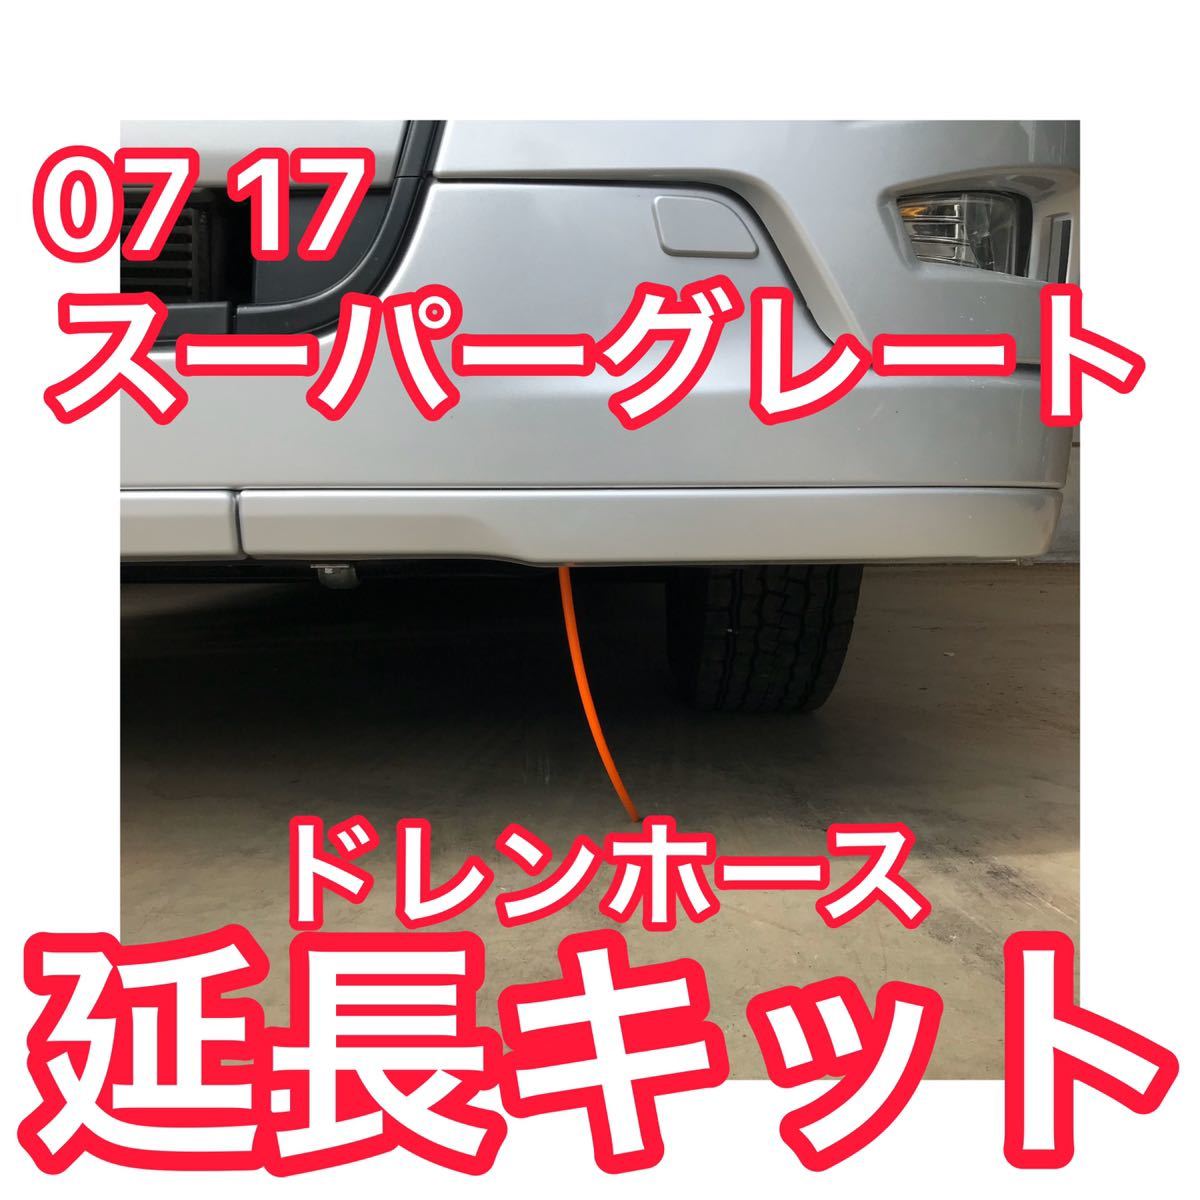 【オレンジ】07 17 スーパーグレート 延長ドレンホースキット エアコンホース_画像1